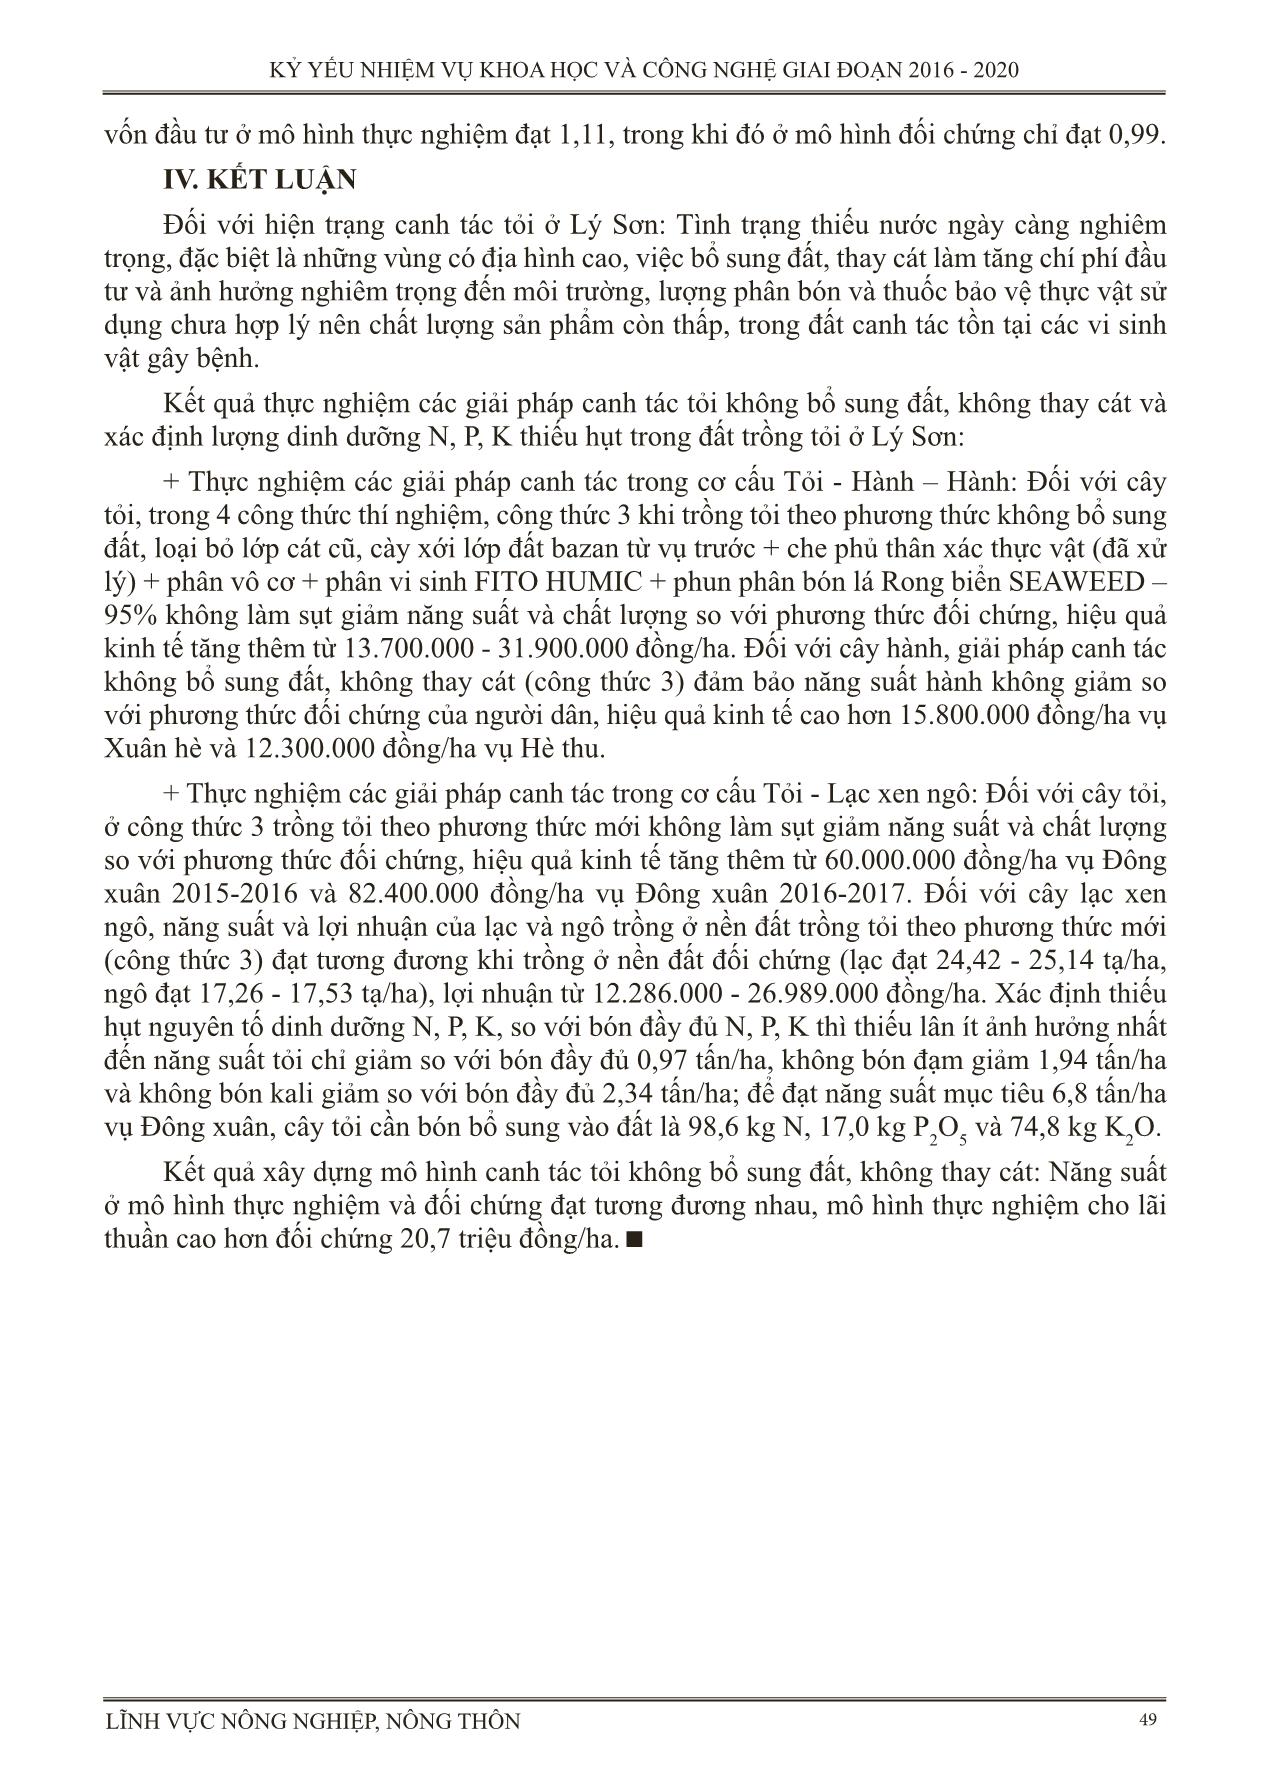 Thực nghiệm các giải pháp kỹ thuật trong canh tác tỏi ở huyện đảo Lý Sơn tỉnh Quảng Ngãi (Canh tác tỏi không bổ sung đất, không thay cát) trang 7